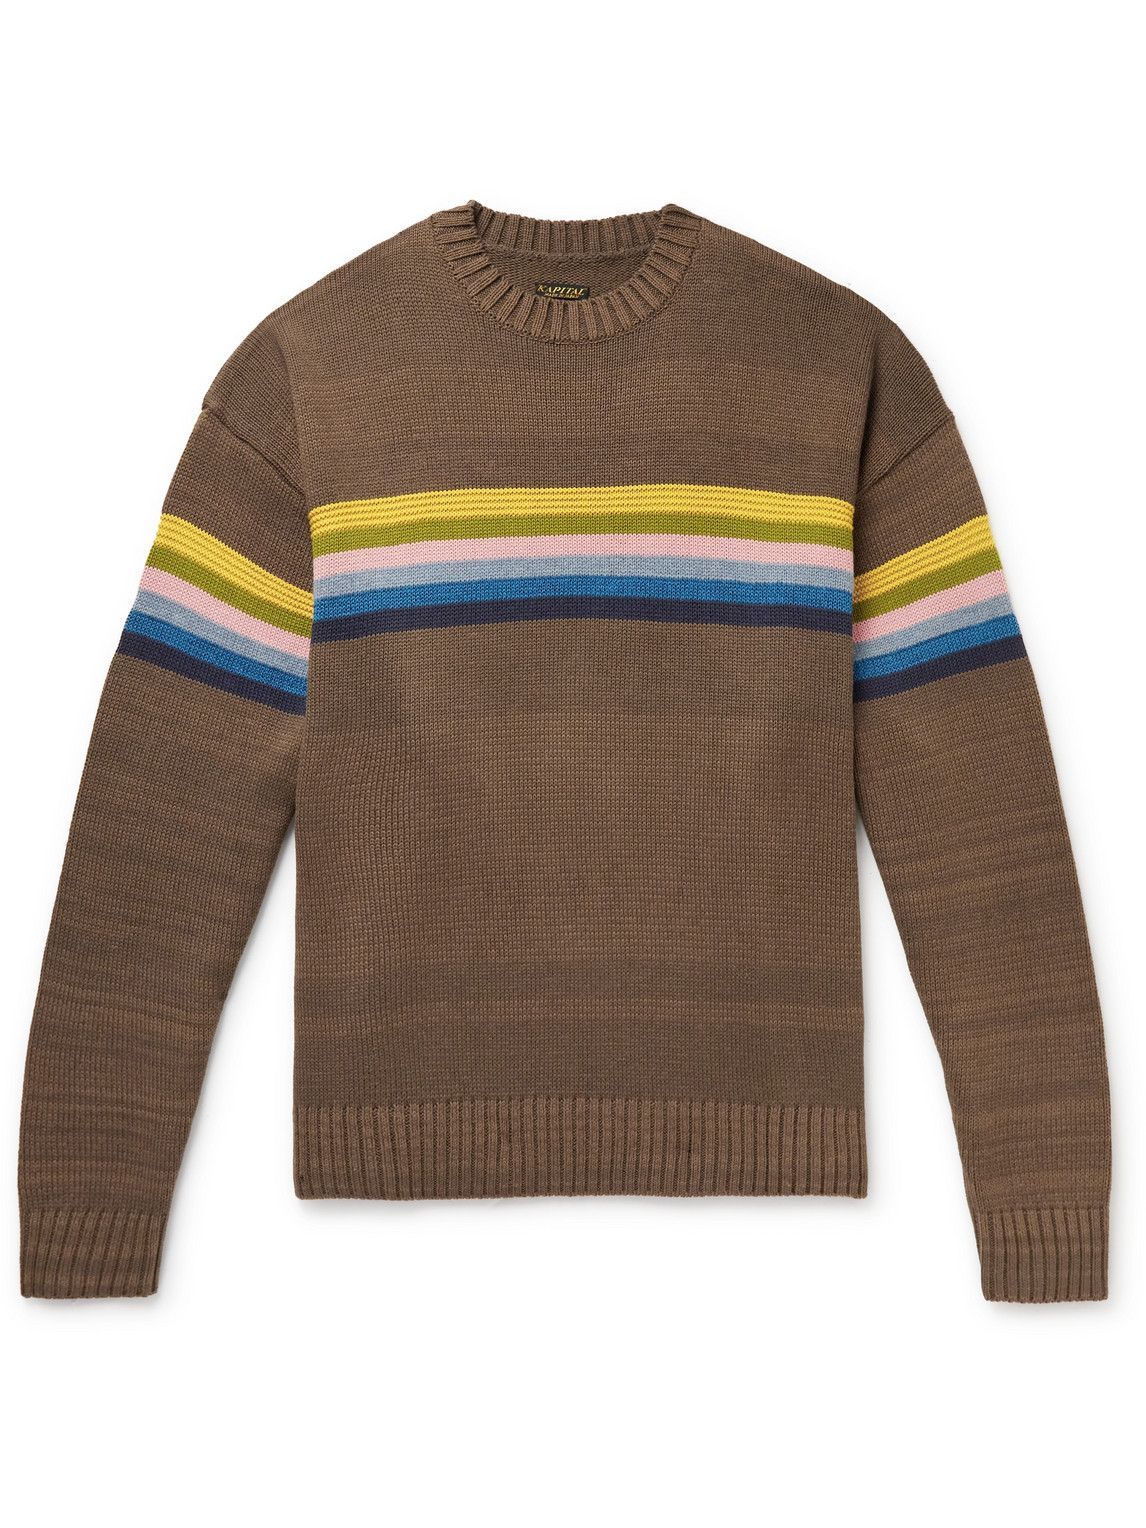 KAPITAL - Striped Cotton-Blend Jacquard Sweater - Brown KAPITAL